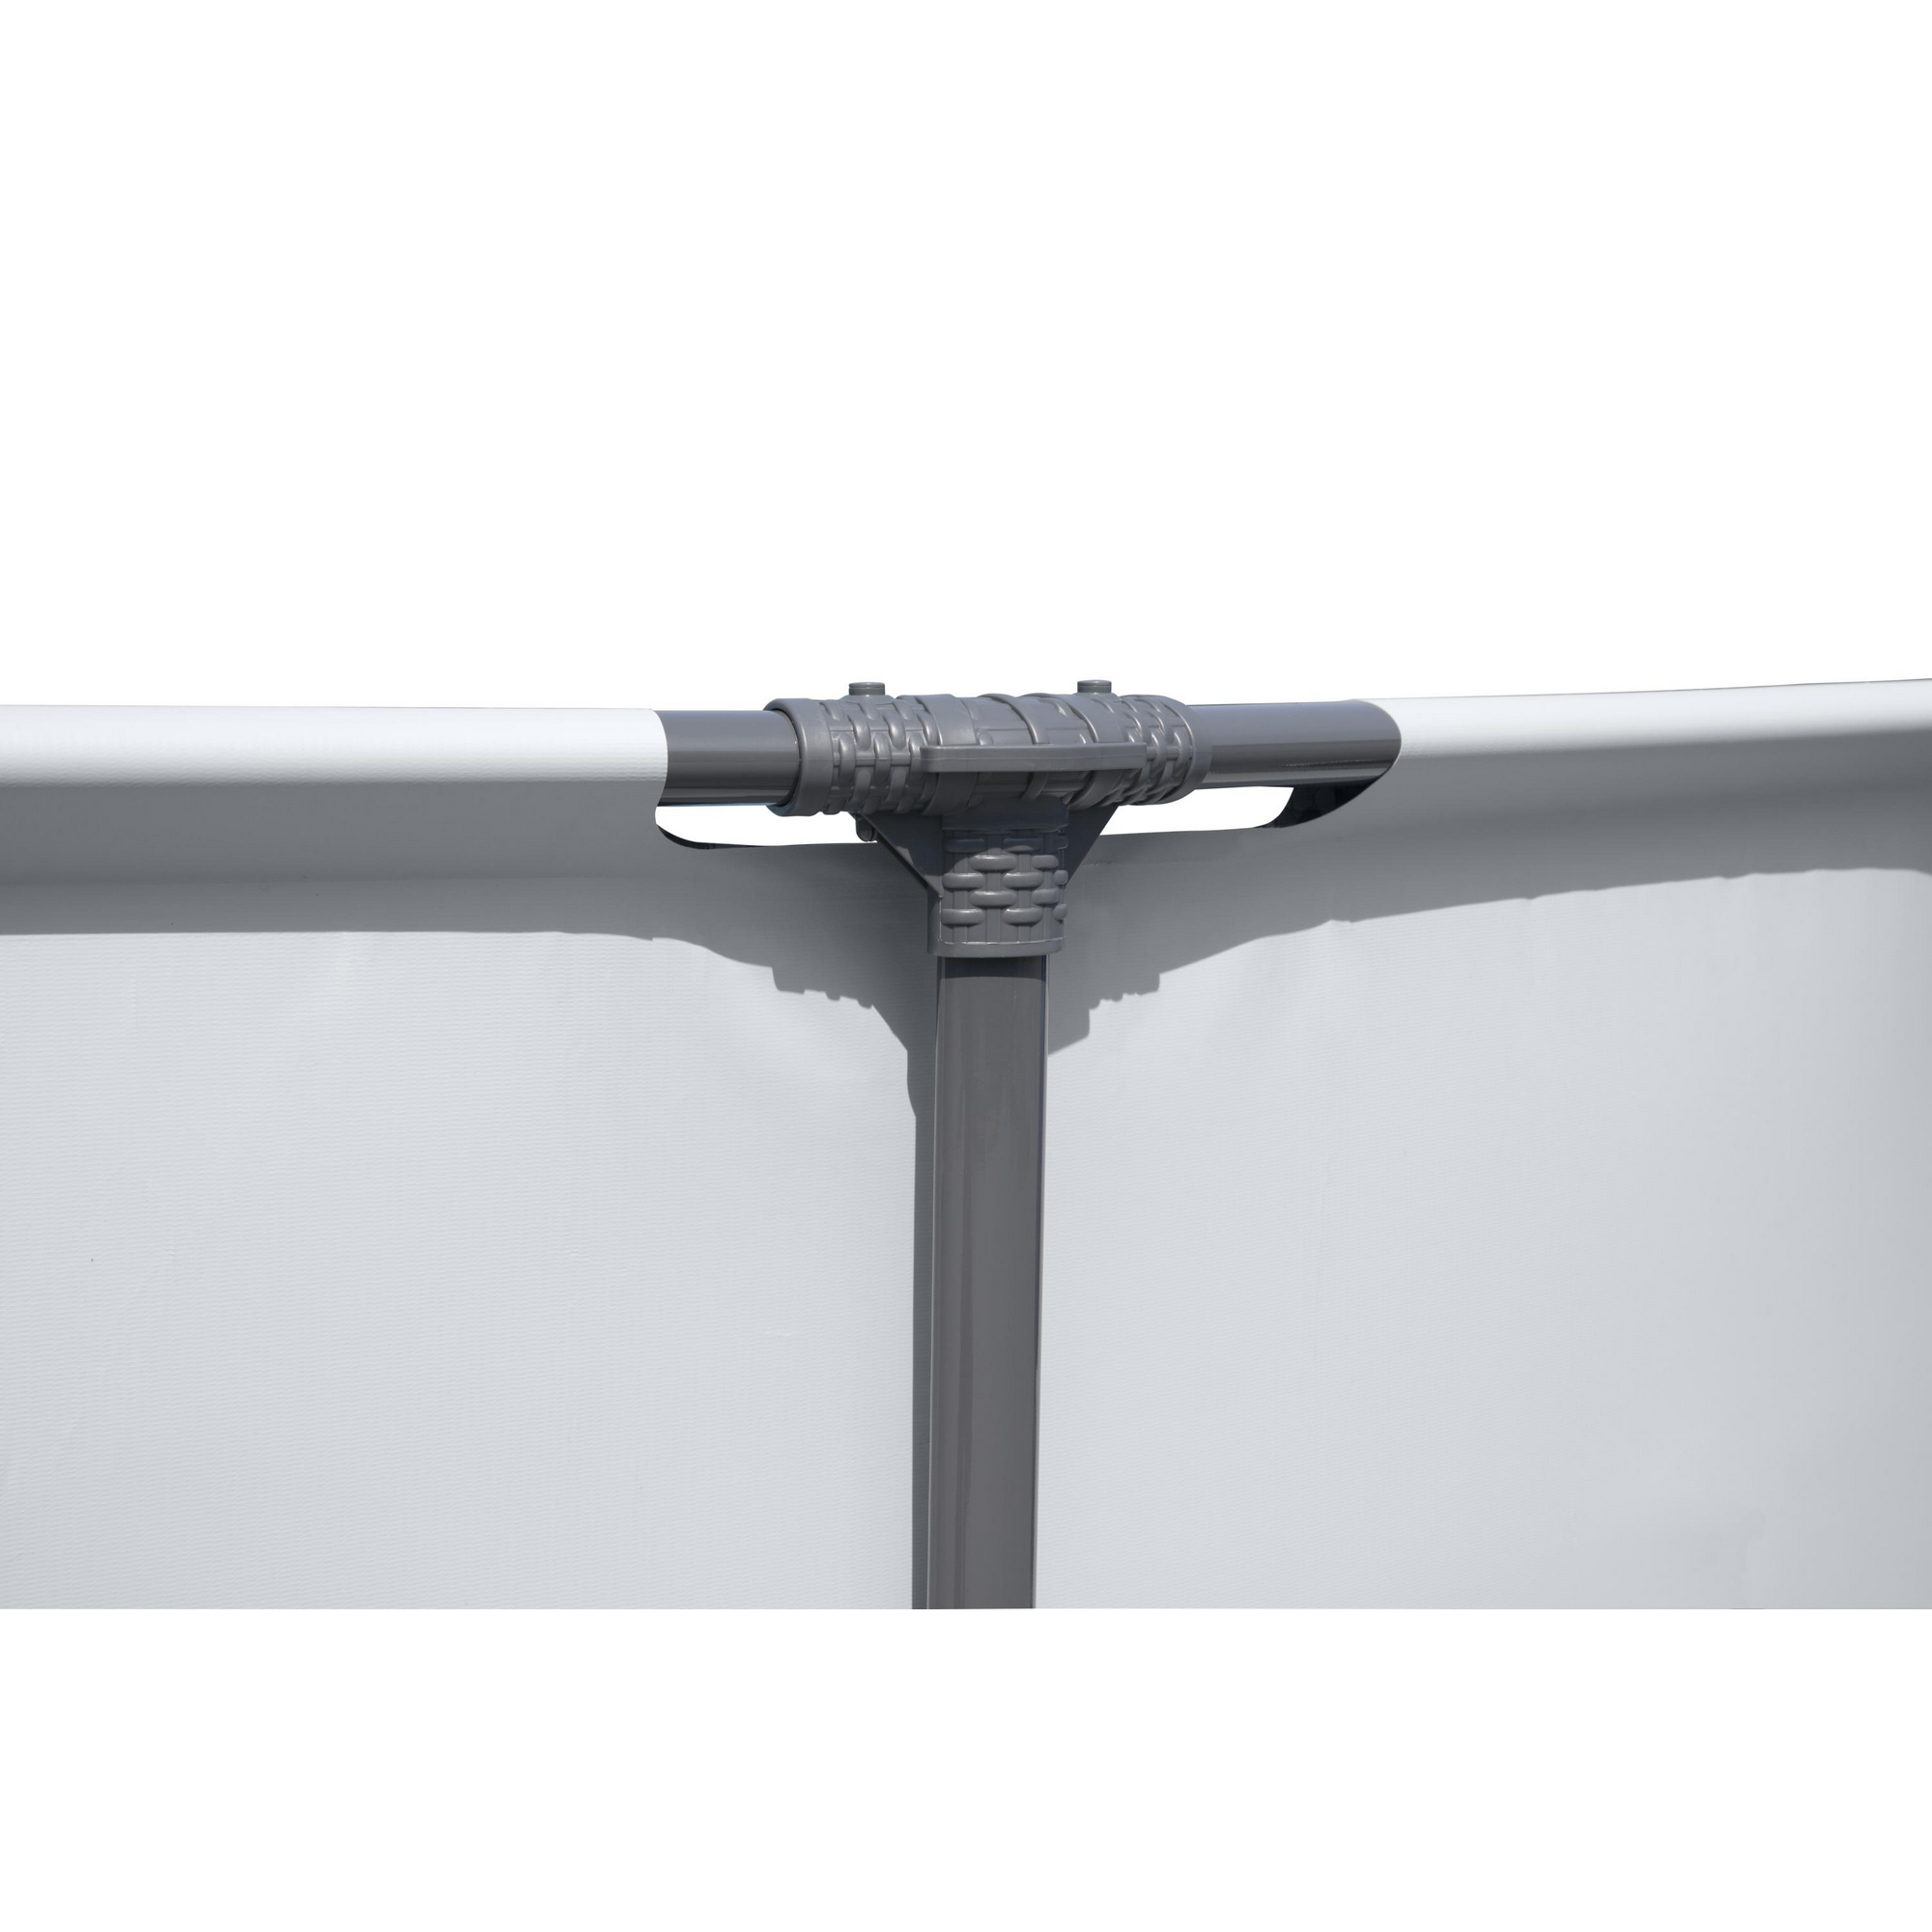 Aufstellpool 'Steel Pro MAX' grau/weiß rund Ø 427 x 84 cm + product picture